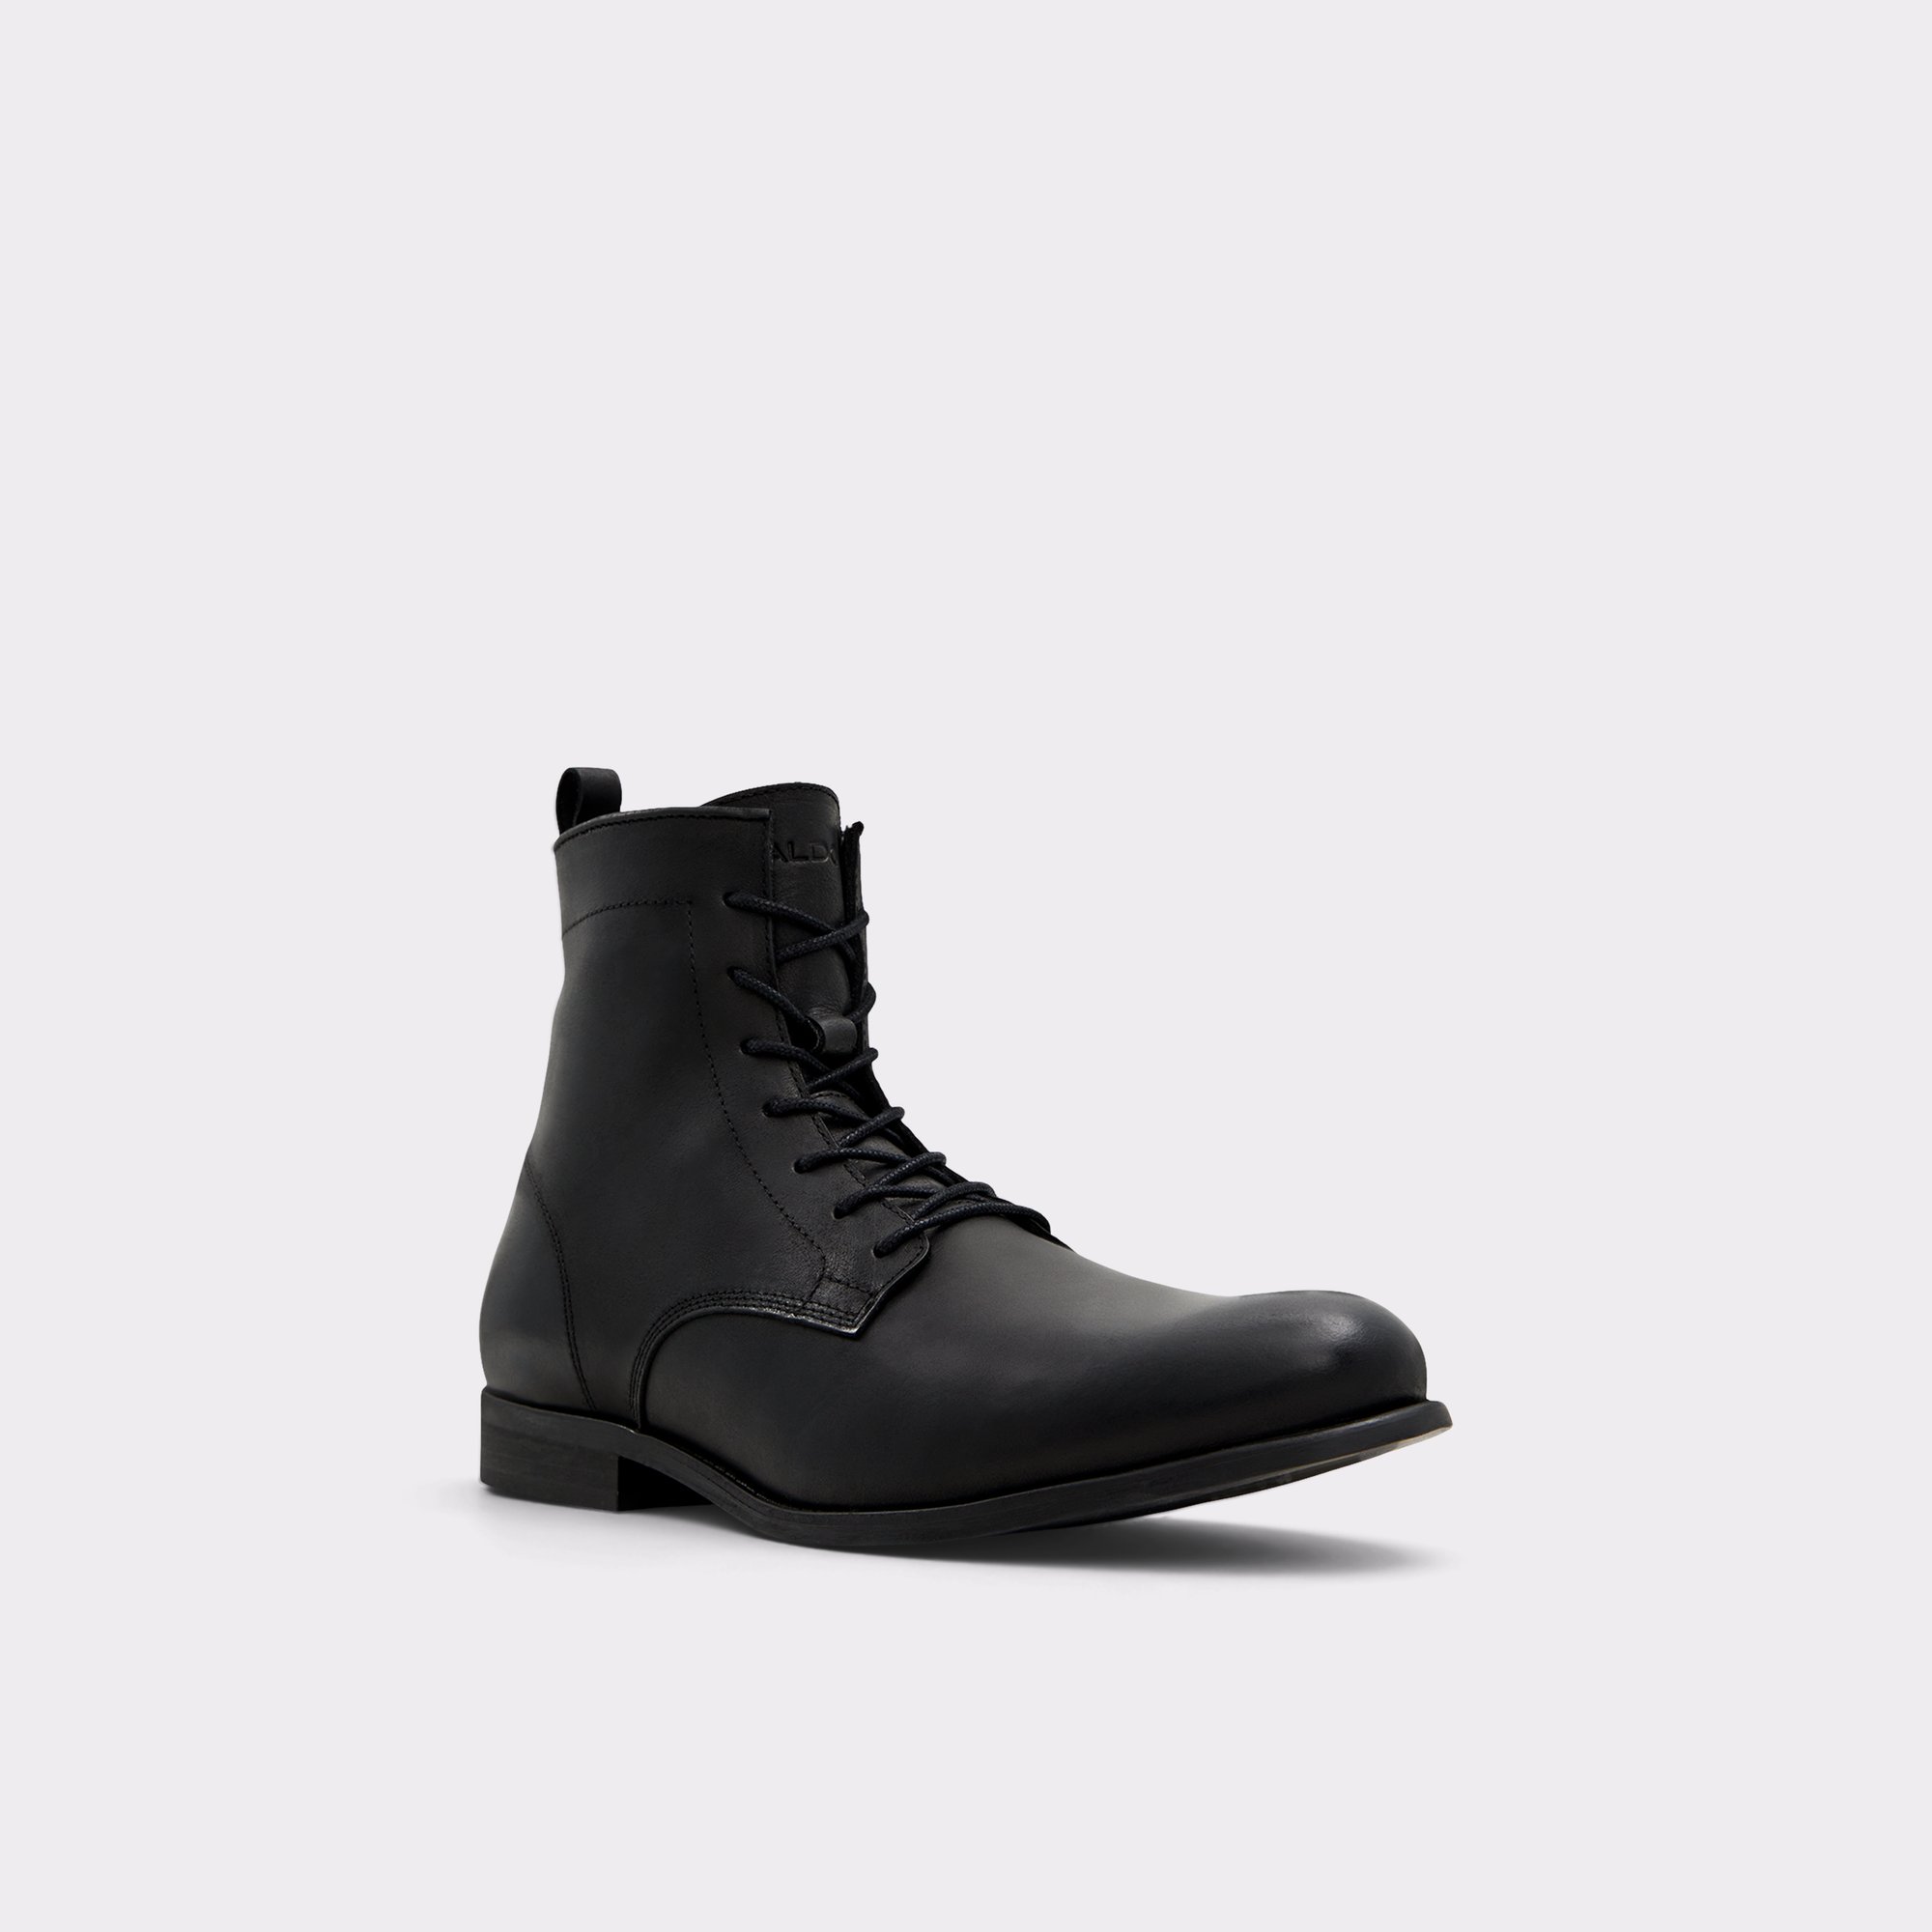 Twain Black Men's Lace-up boots | ALDO US